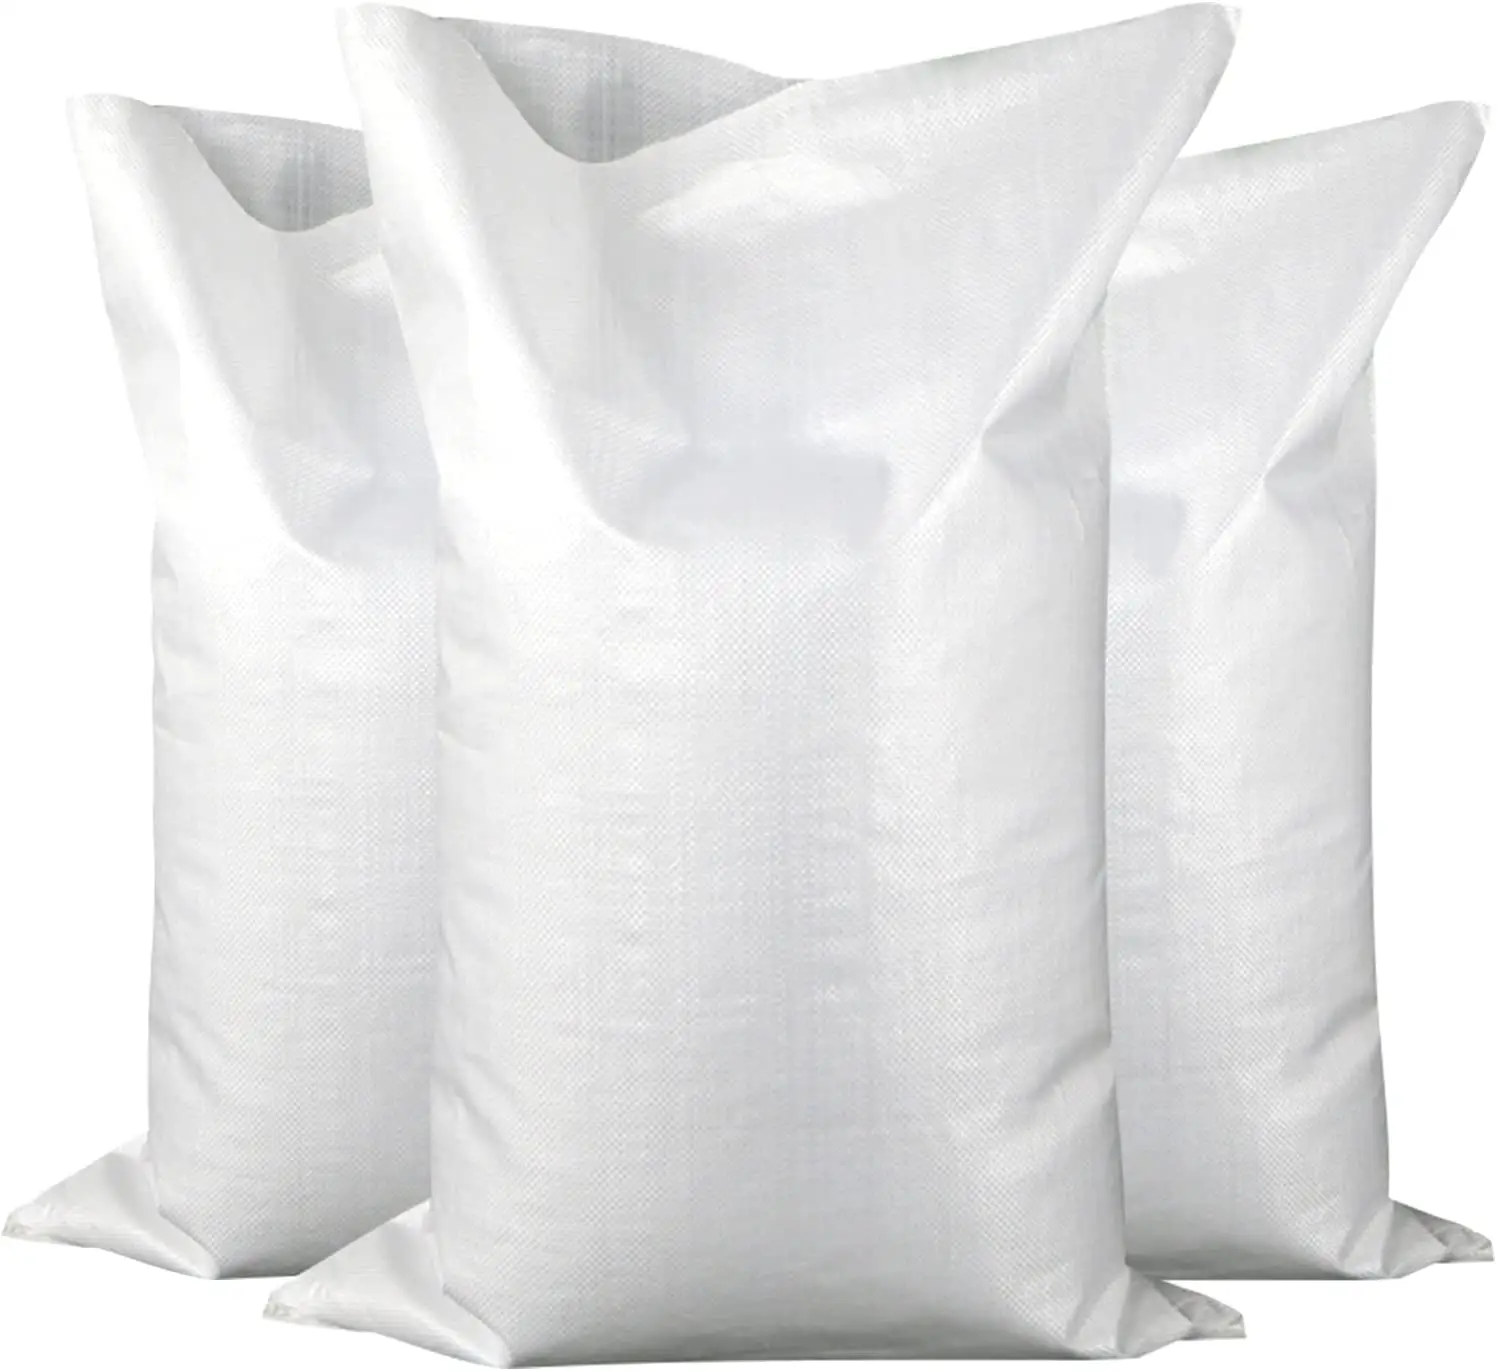 Spot wholesale polypropylene woven bag manufacturer white 100% 25kg 50kg plastic packing bag